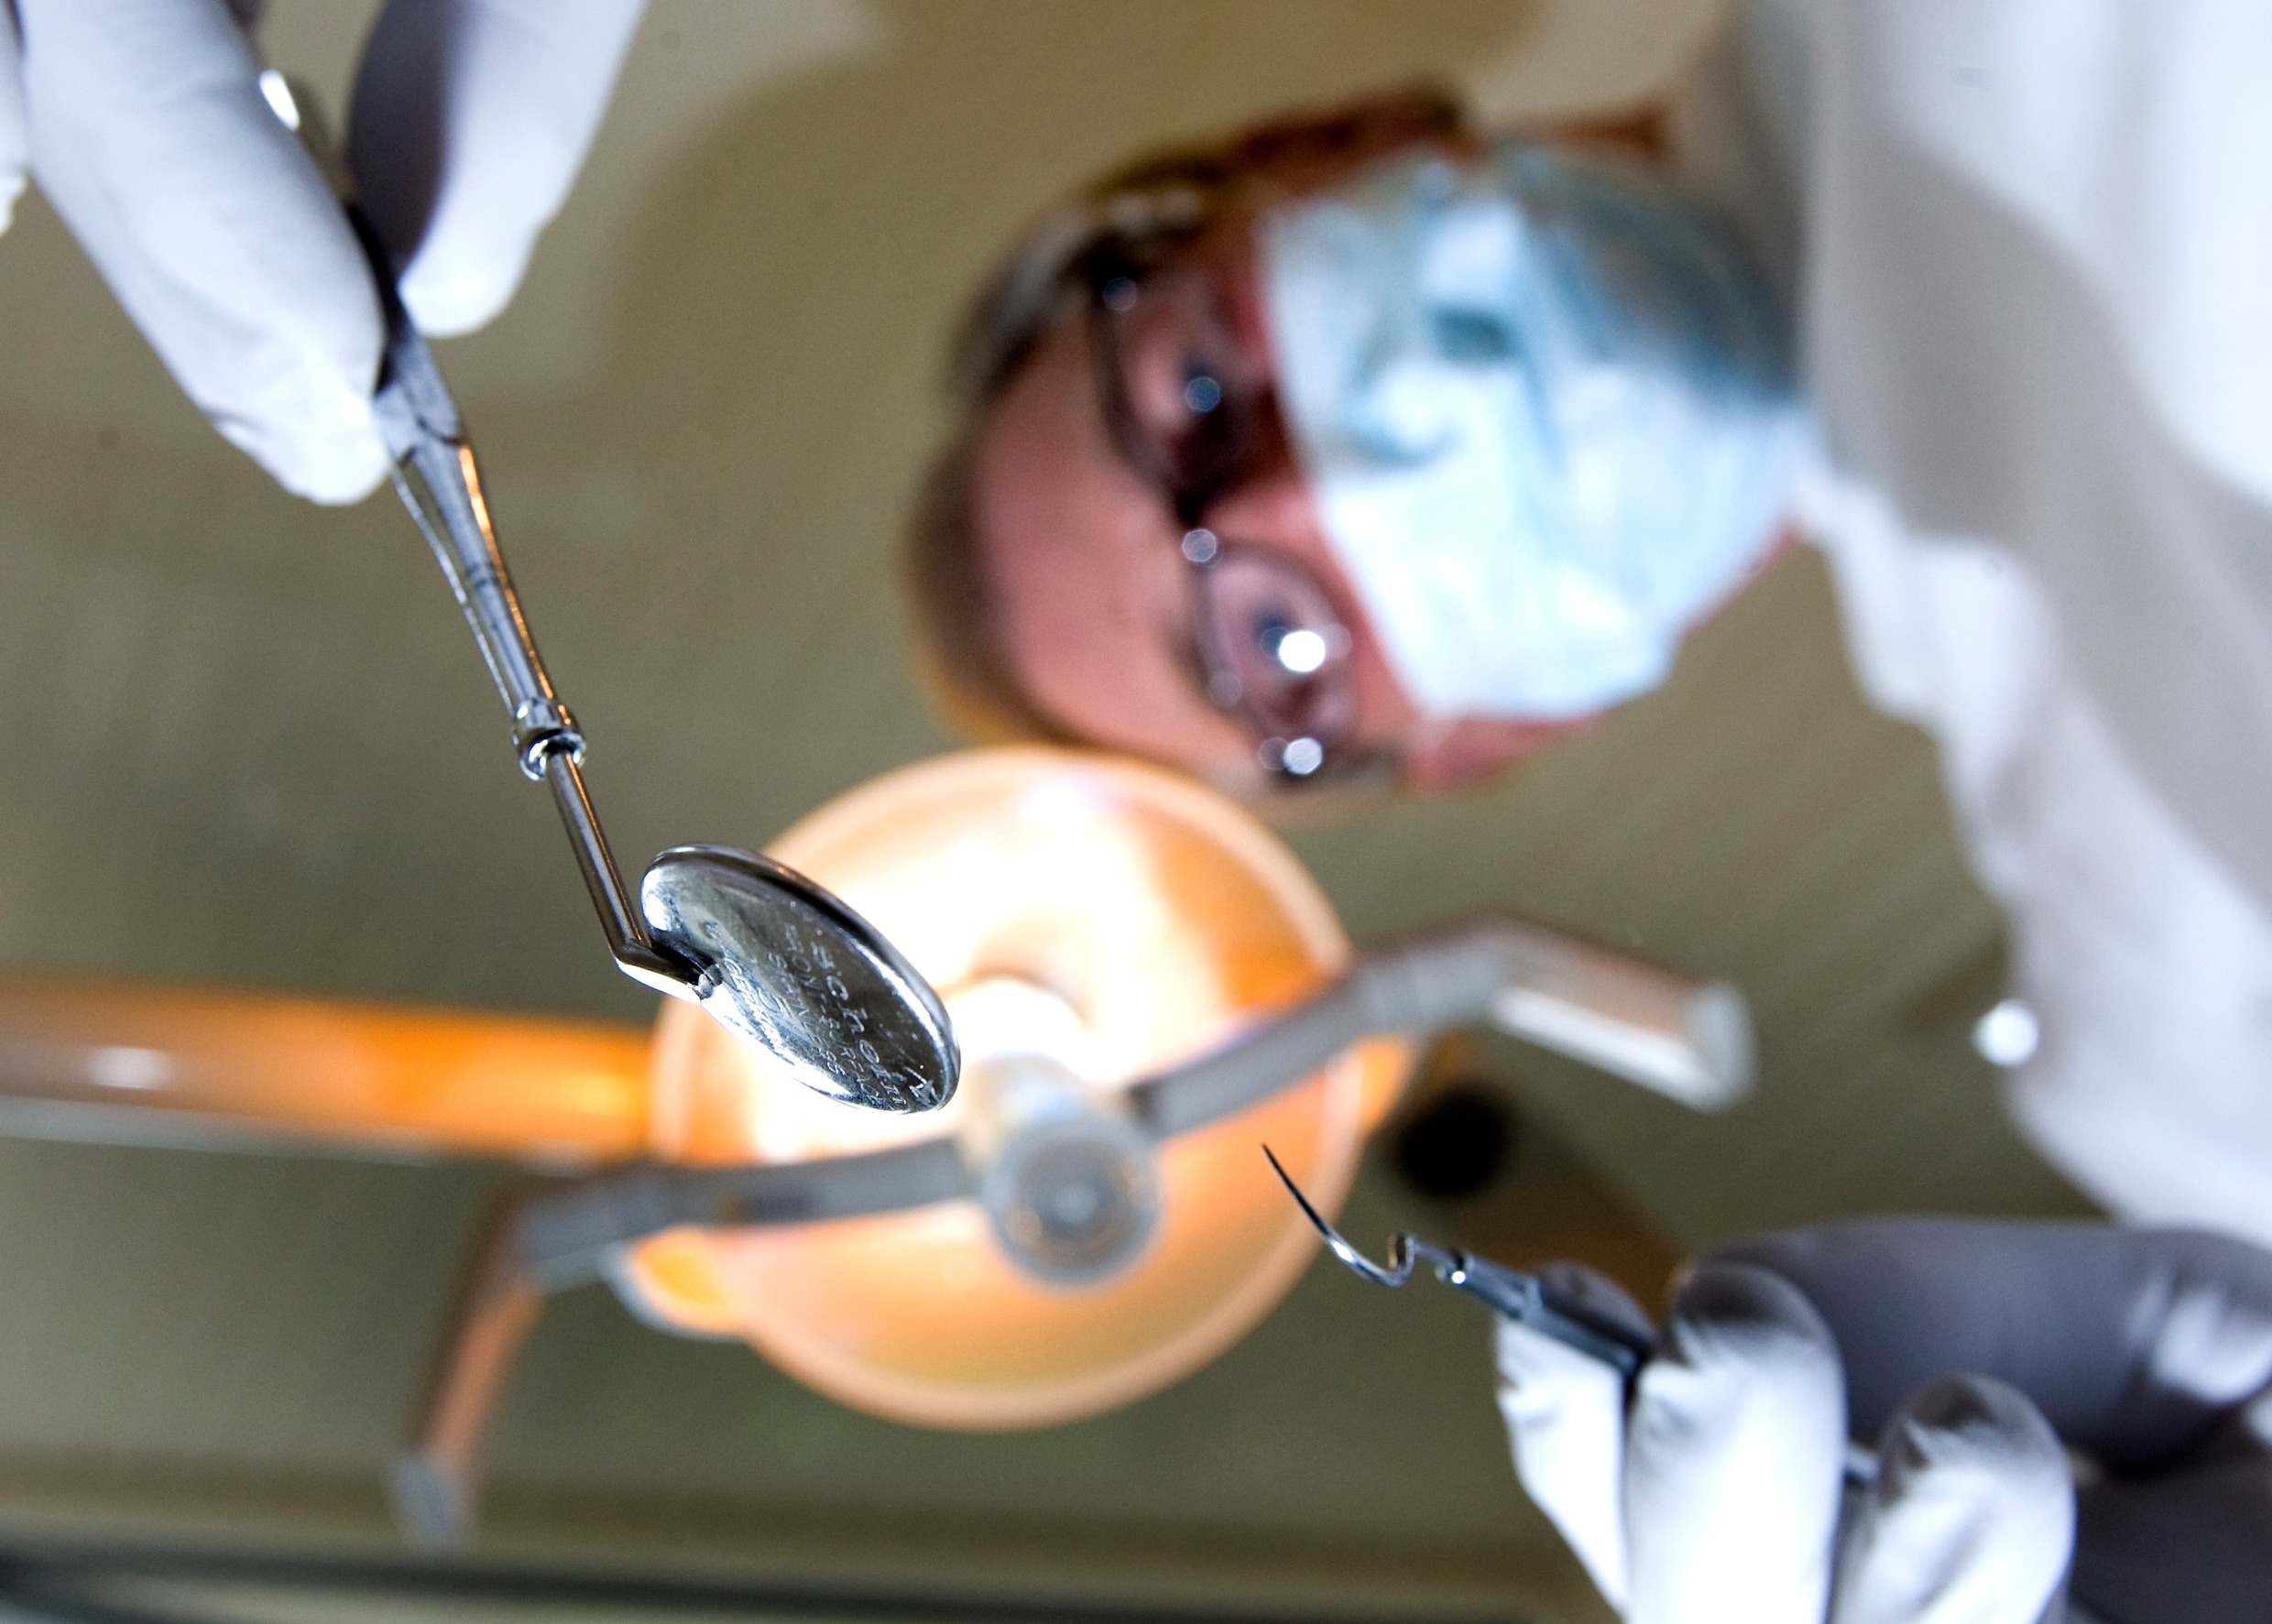 Delegeren tandartsen te veel? Inspectie houdt praktijken tegen het licht